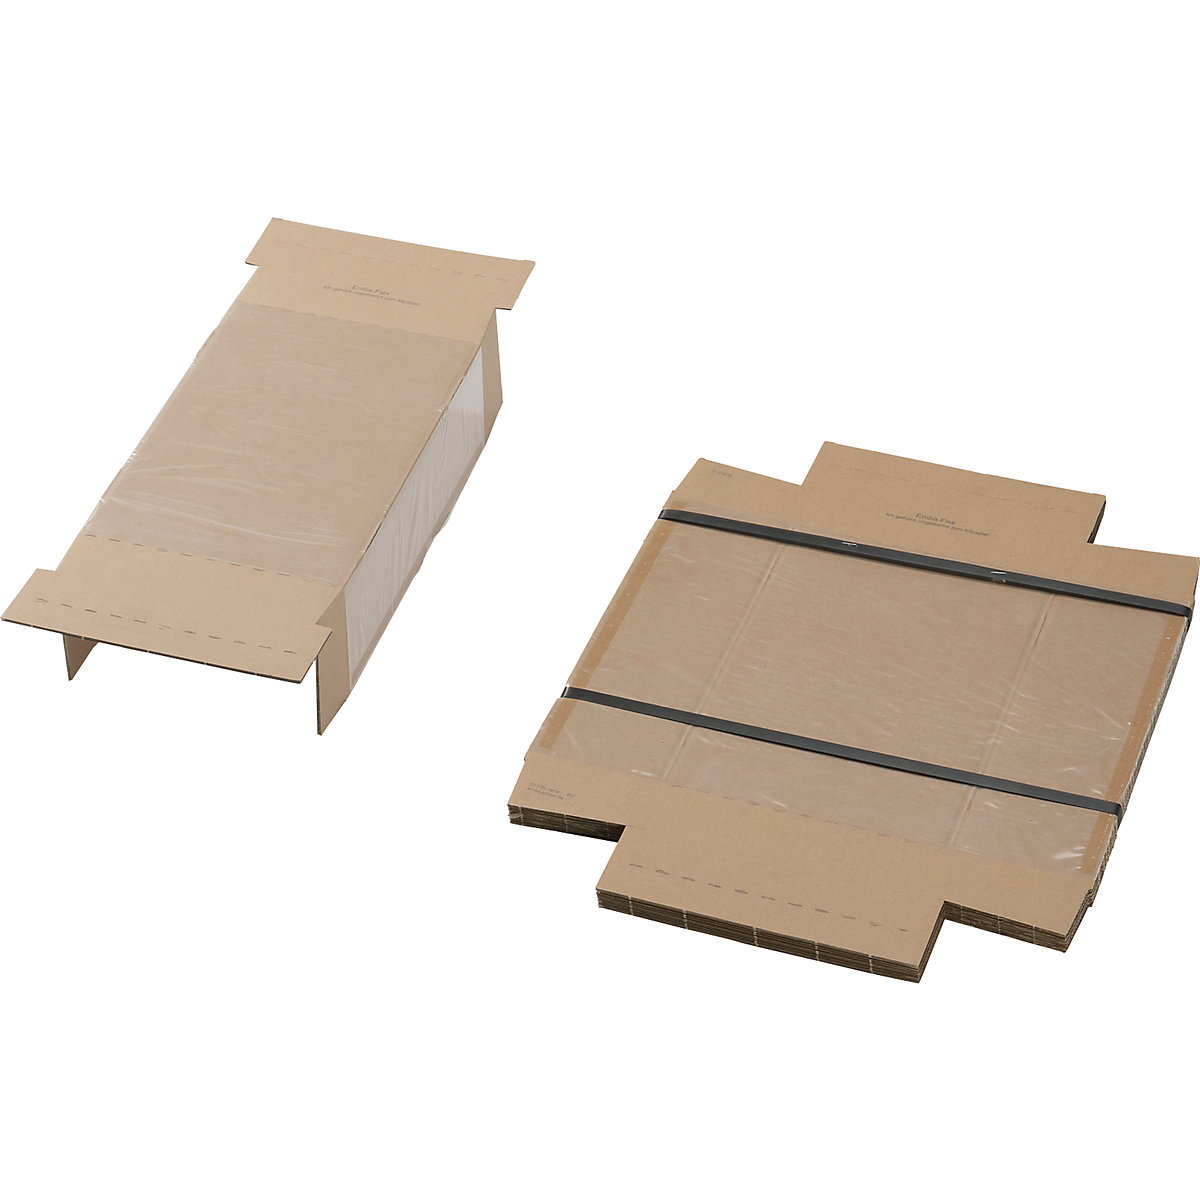 Embalaje de fijación, con pieza interior de fijación y caja protectora externa, UE 25 unid., para dimensiones de paquete de L x A x H 300 x 200 x 100 mm-3